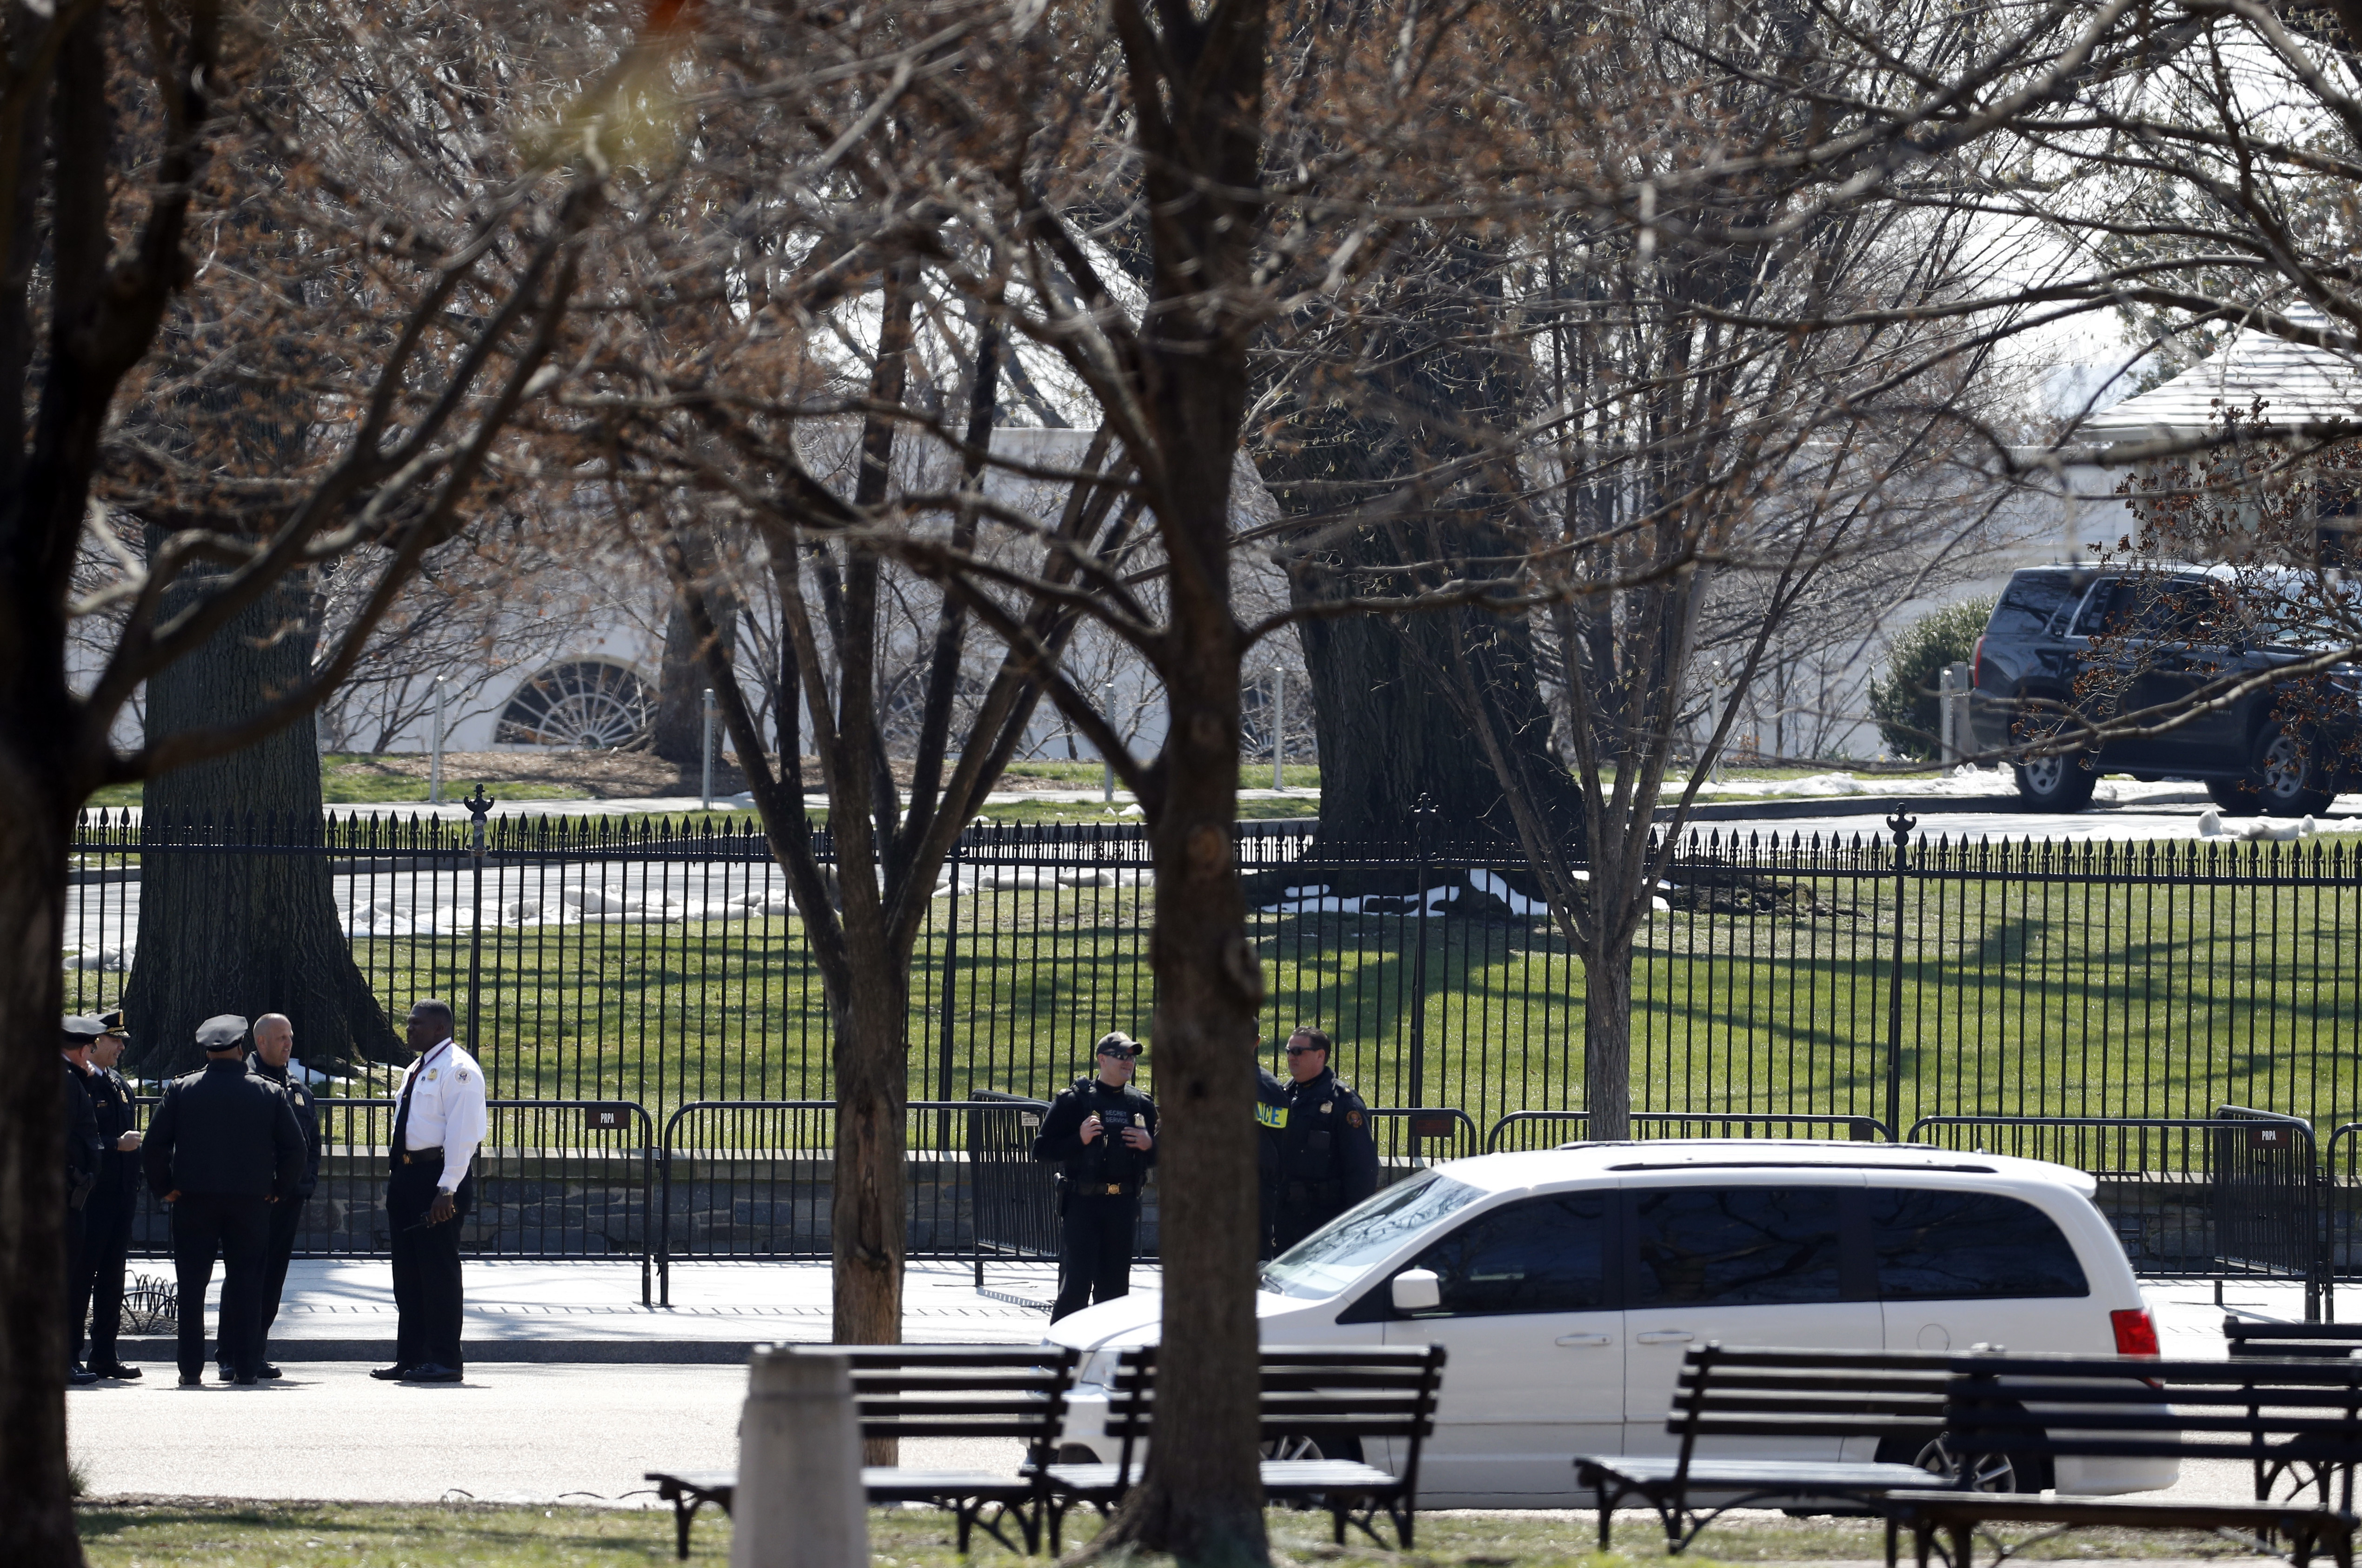 Служители на Сикрет сървис пред Белия дом във Вашингтон